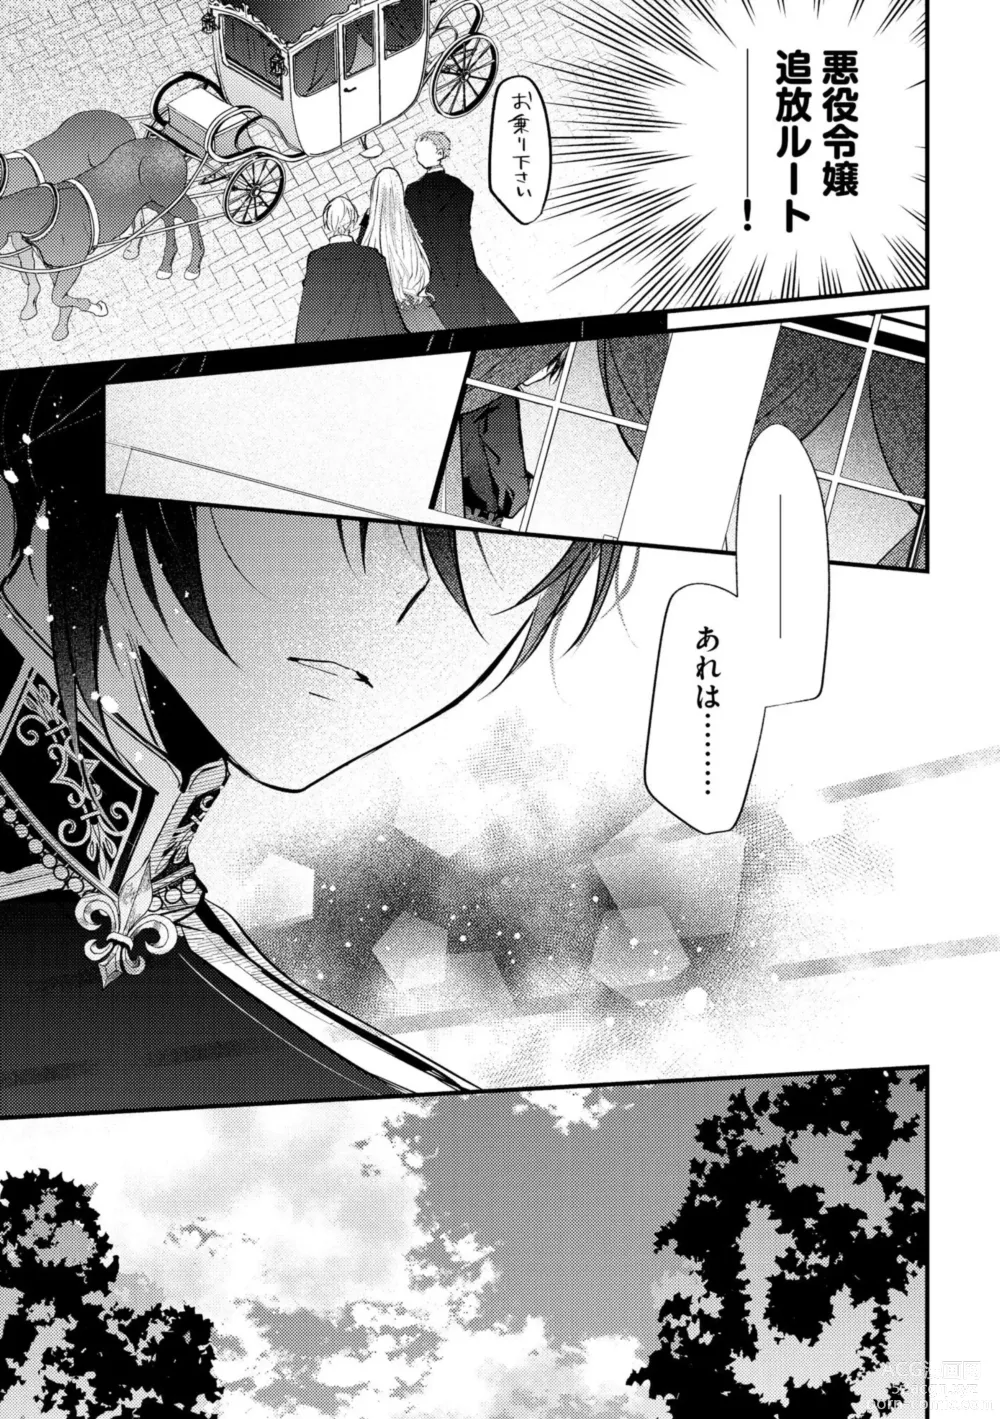 Page 11 of manga Akuyaku Reijou to Kyuuketsu Ouji no Dekiai Keiyaku Bad End ￫ Kenzoku Route no Amai Yotogi 1